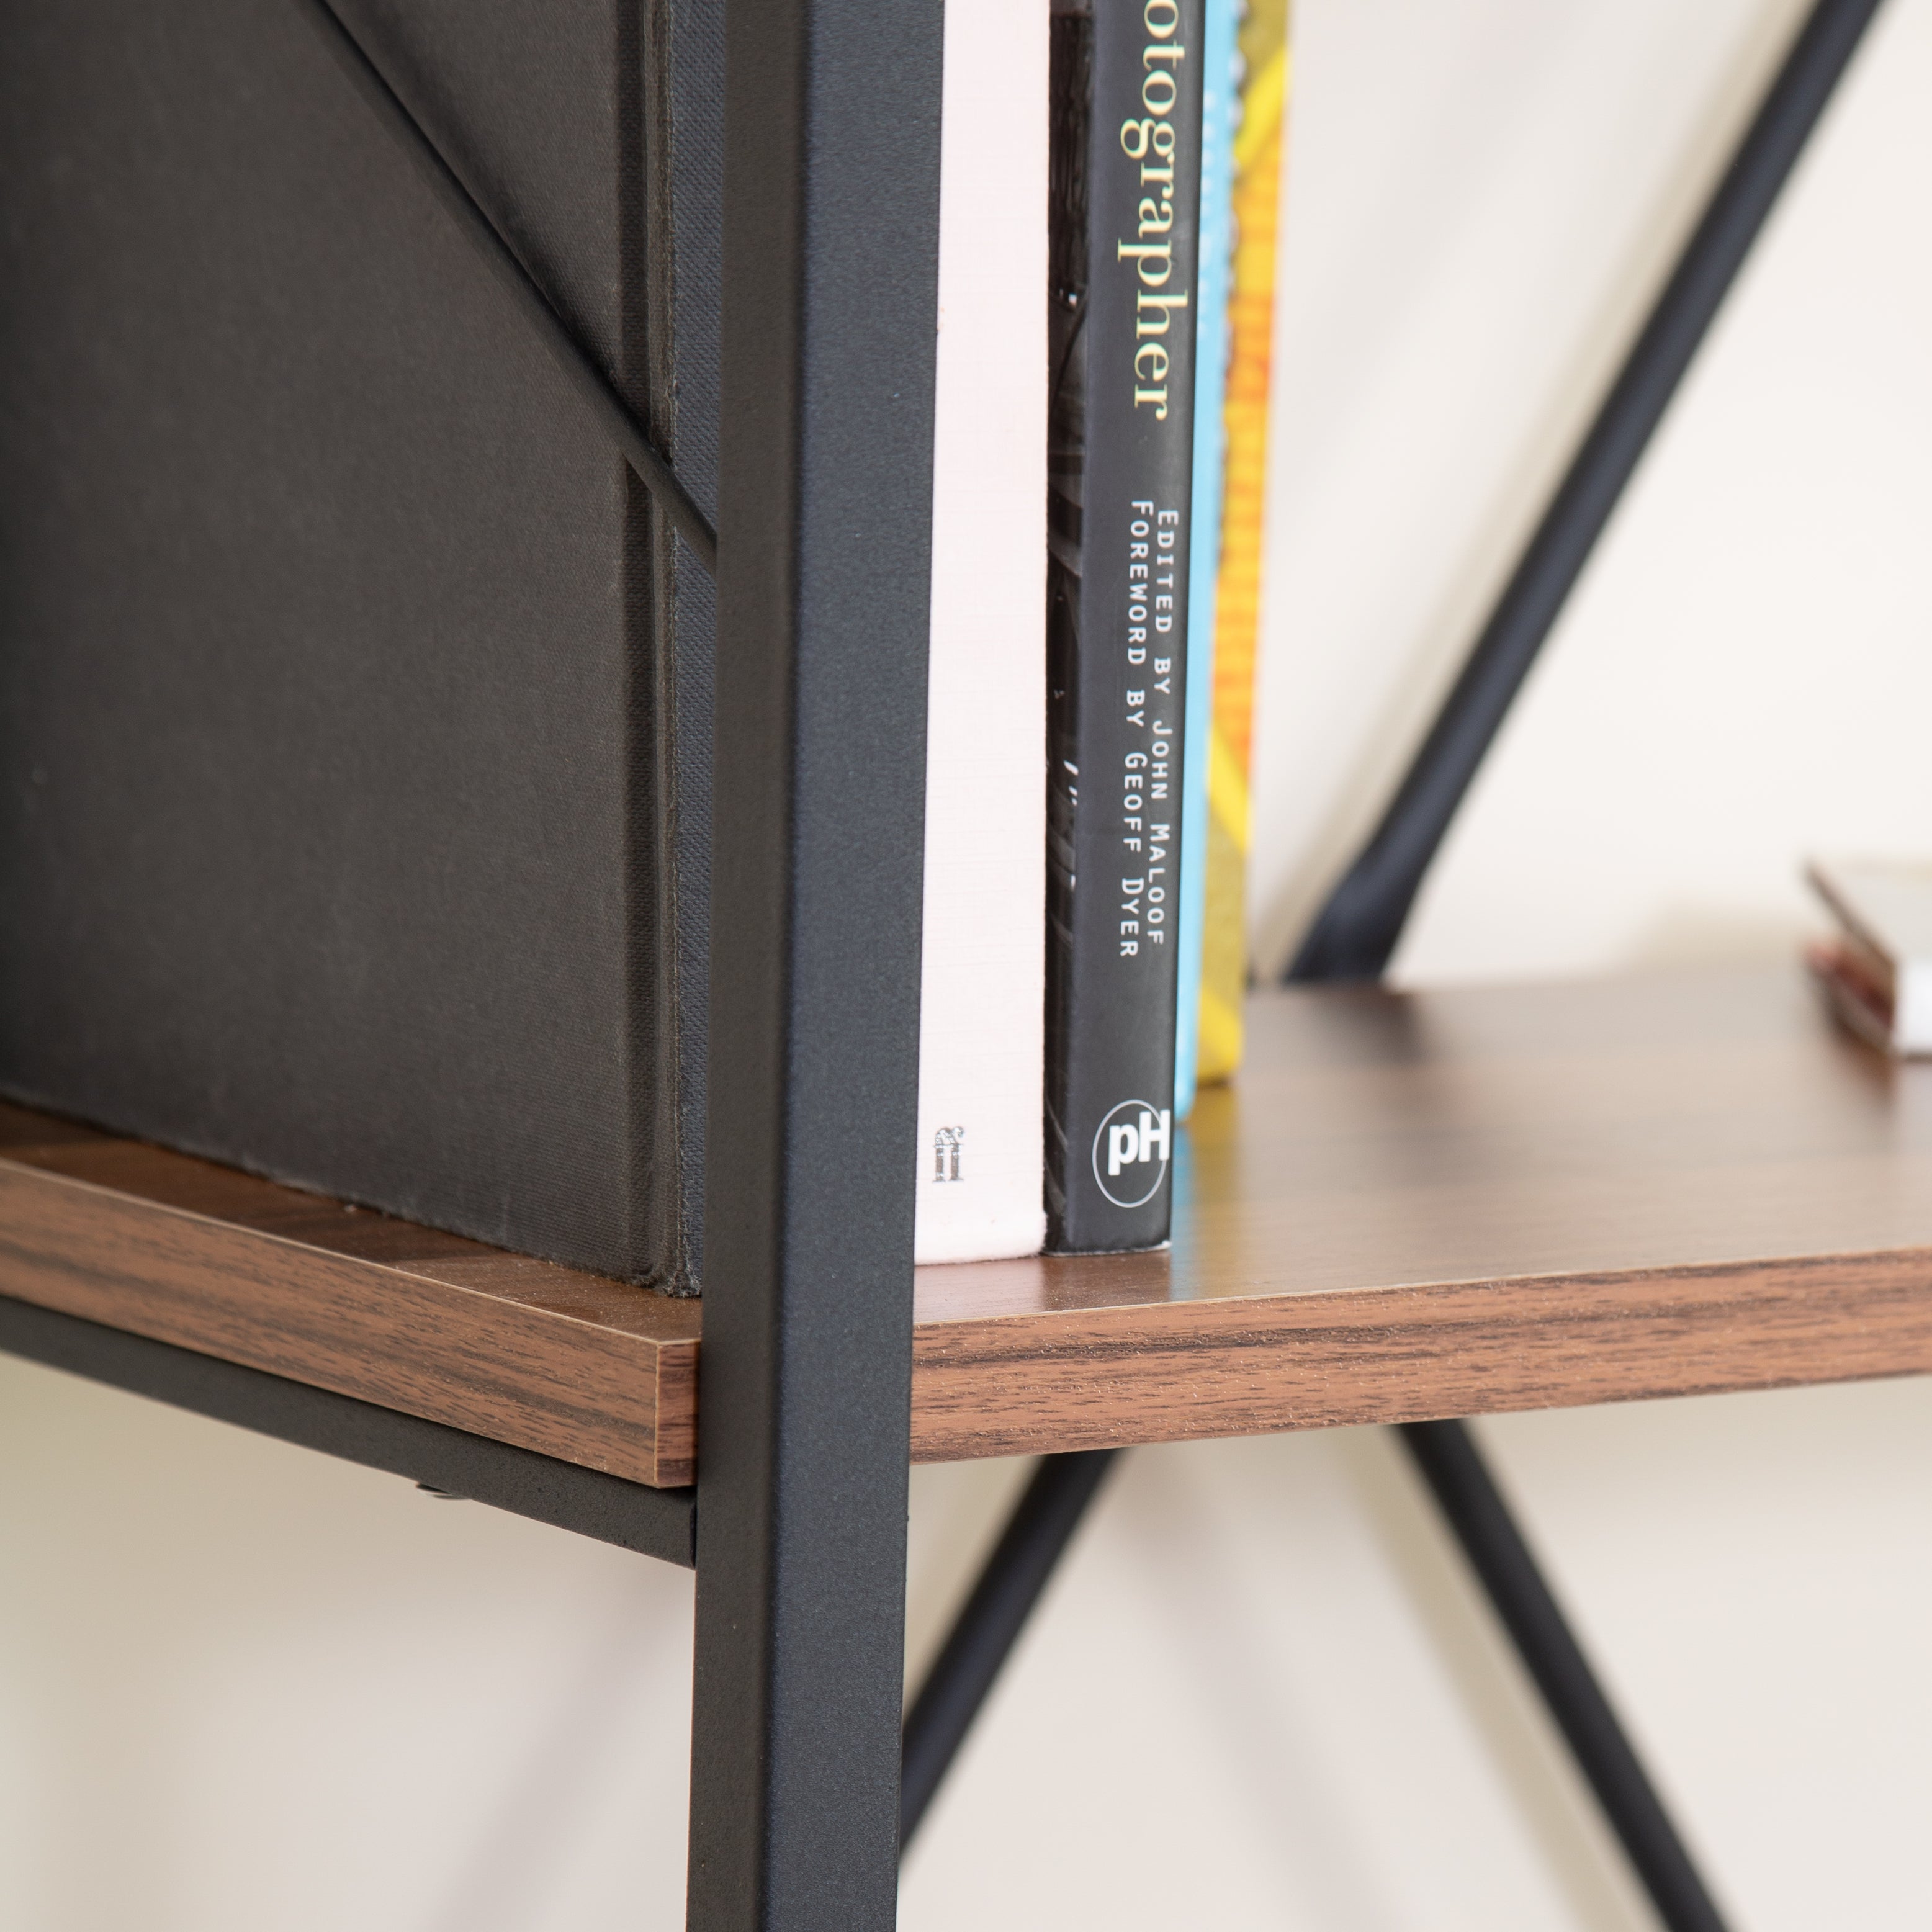 5 Tier Industrial Style Bookshelf - Walnut